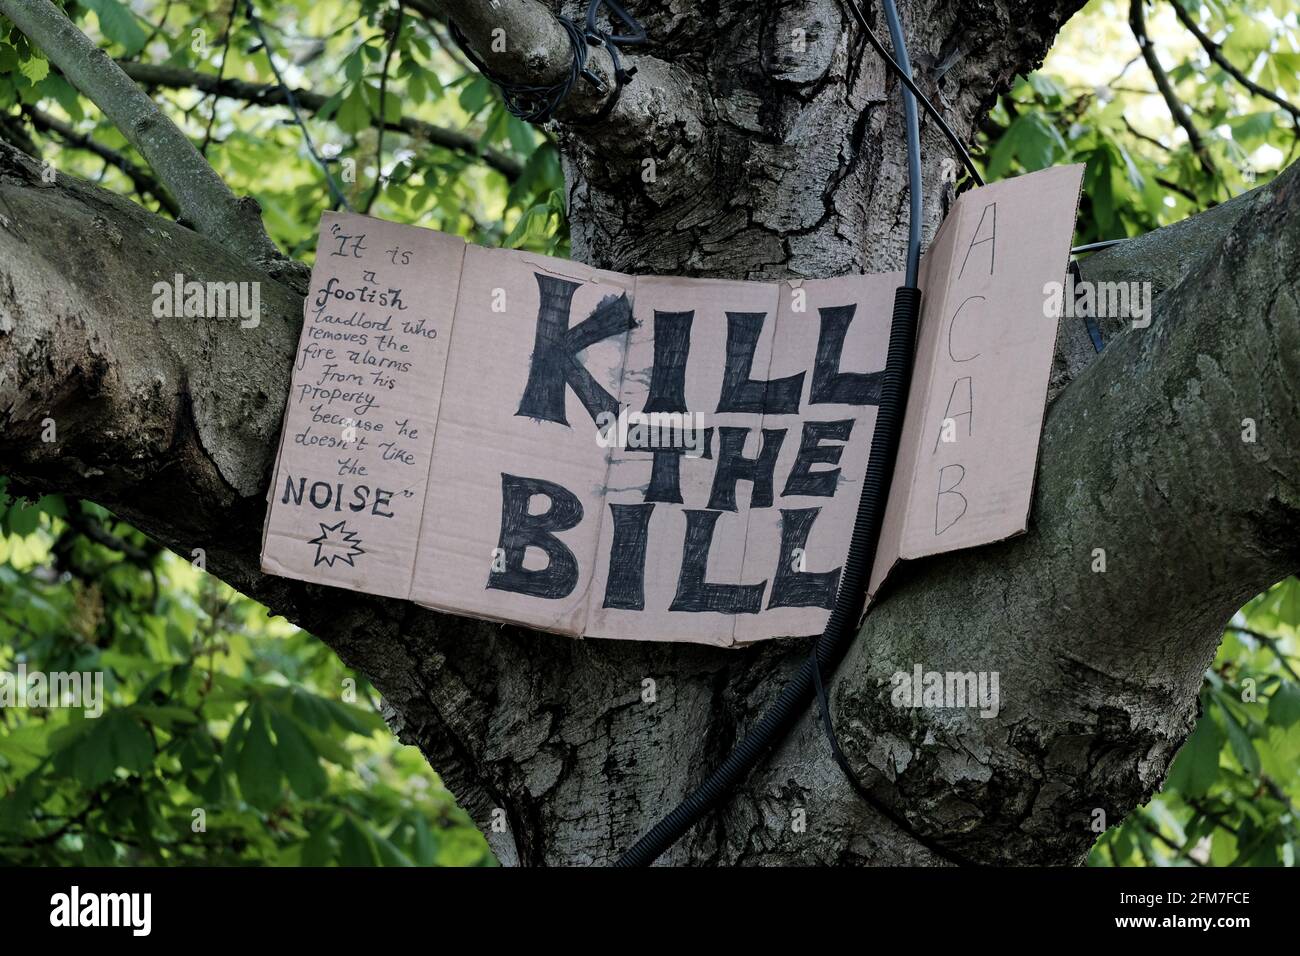 Une étiquette tuer le projet de loi placée dans un arbre. Des manifestations ont lieu depuis mars pour s'opposer à l'adoption d'un projet de loi limitant les libertés de protestation Banque D'Images